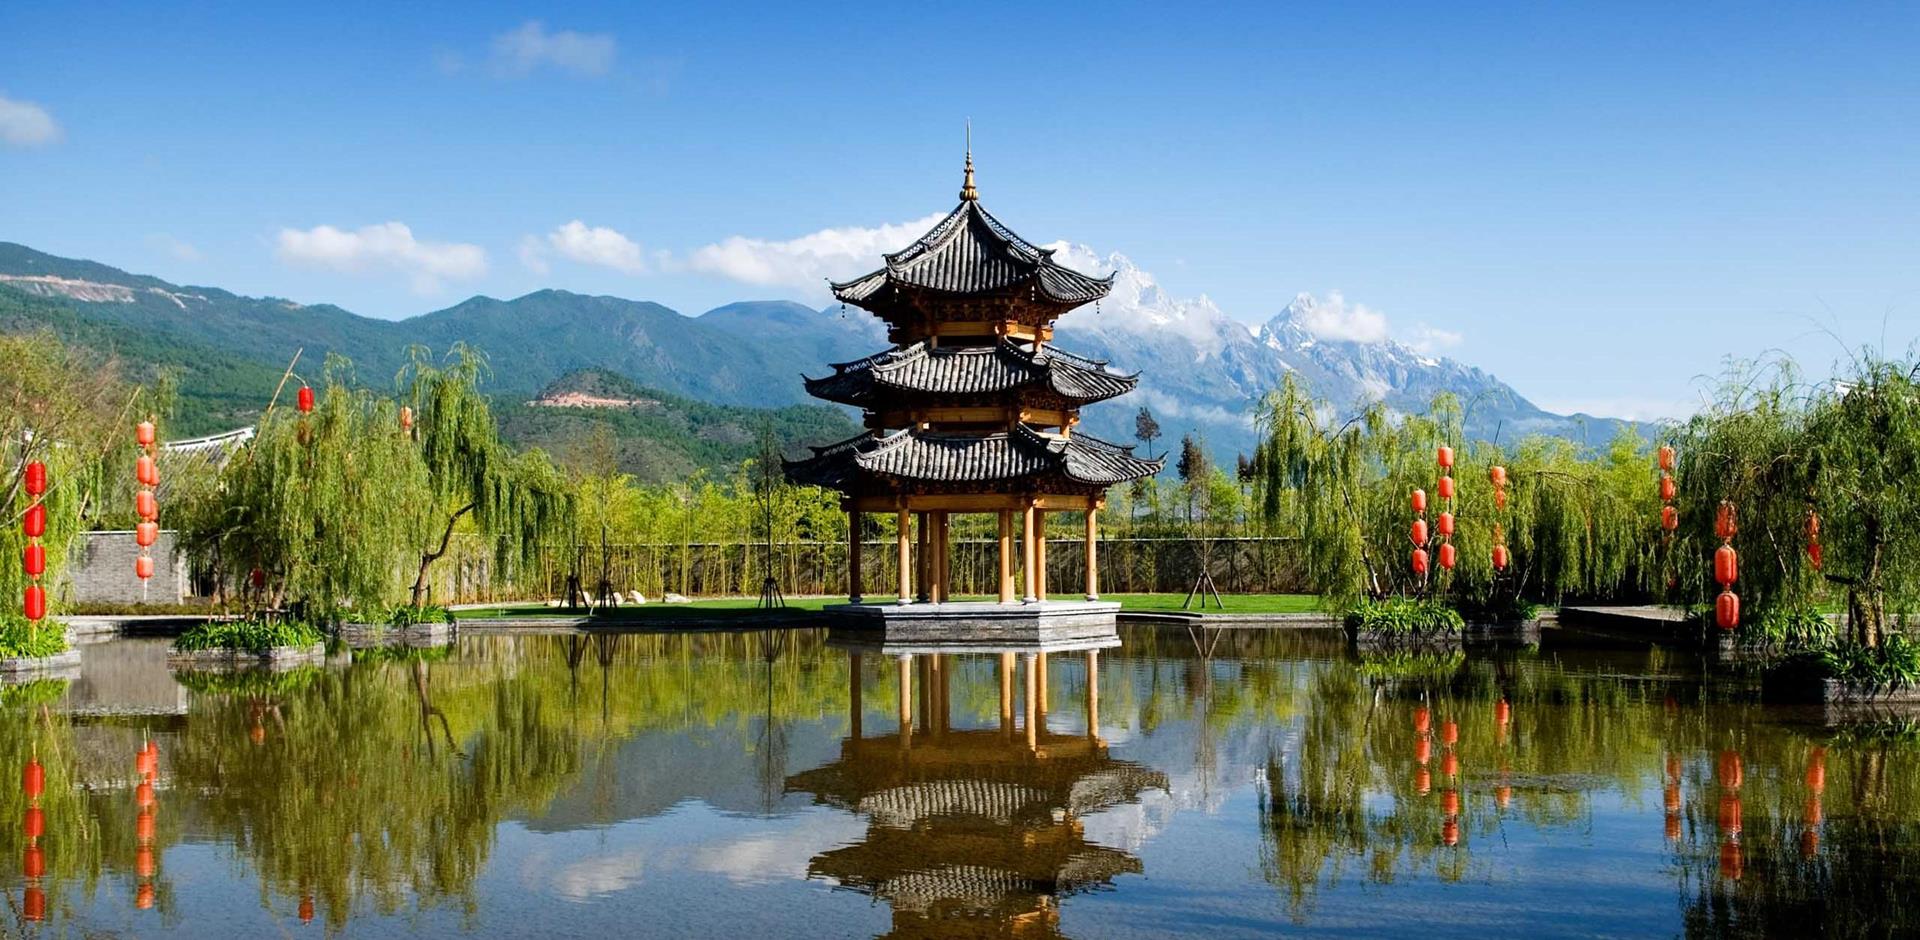 Exterior view, Banyan Tree, Lijiang, China